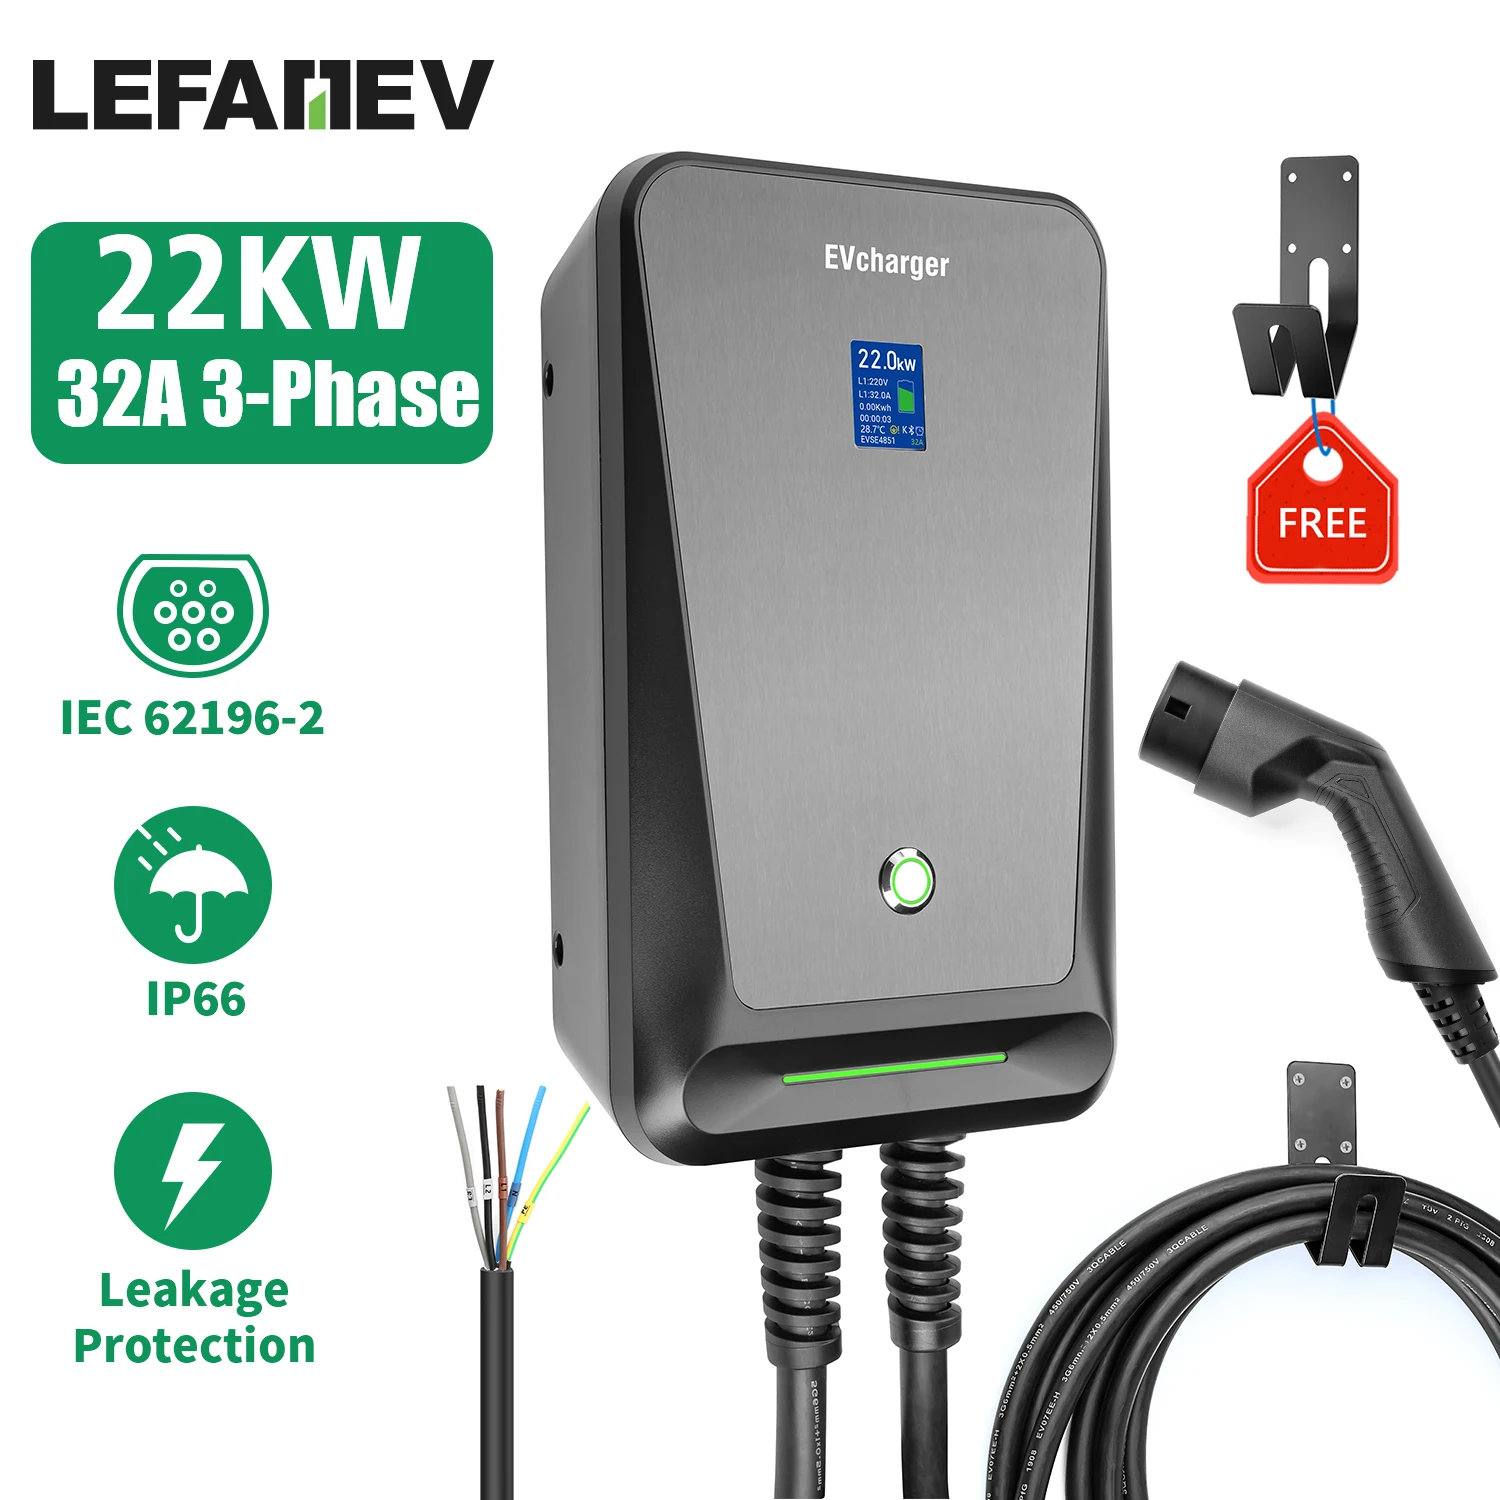 Fey123-Chargeur portable EV Vope2, 32A, 7KW, EVSE, Wi-Fi